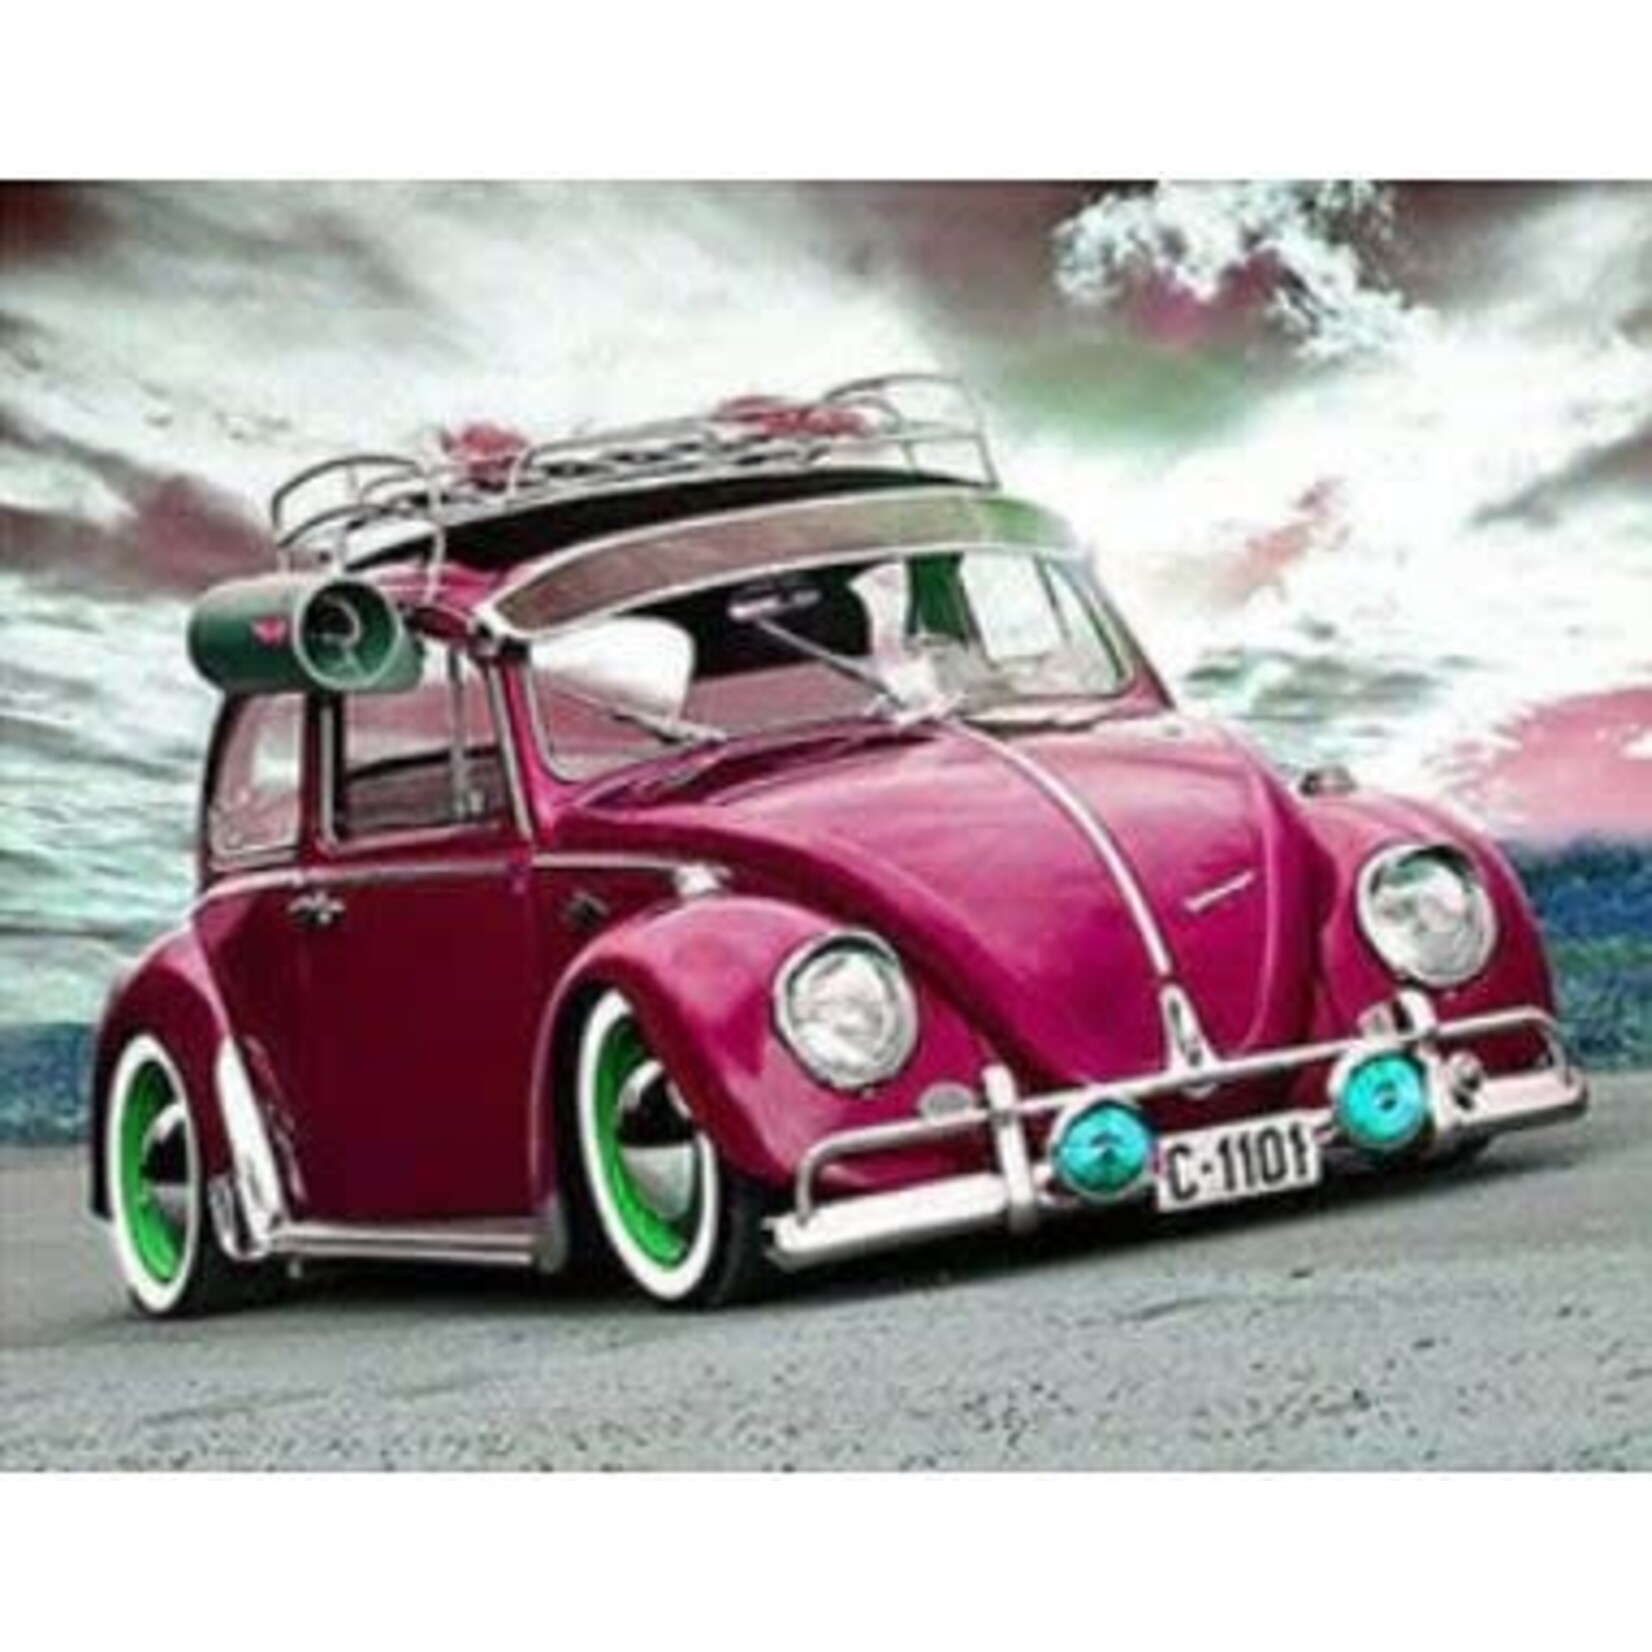 Bordeauxkleurige VW kever